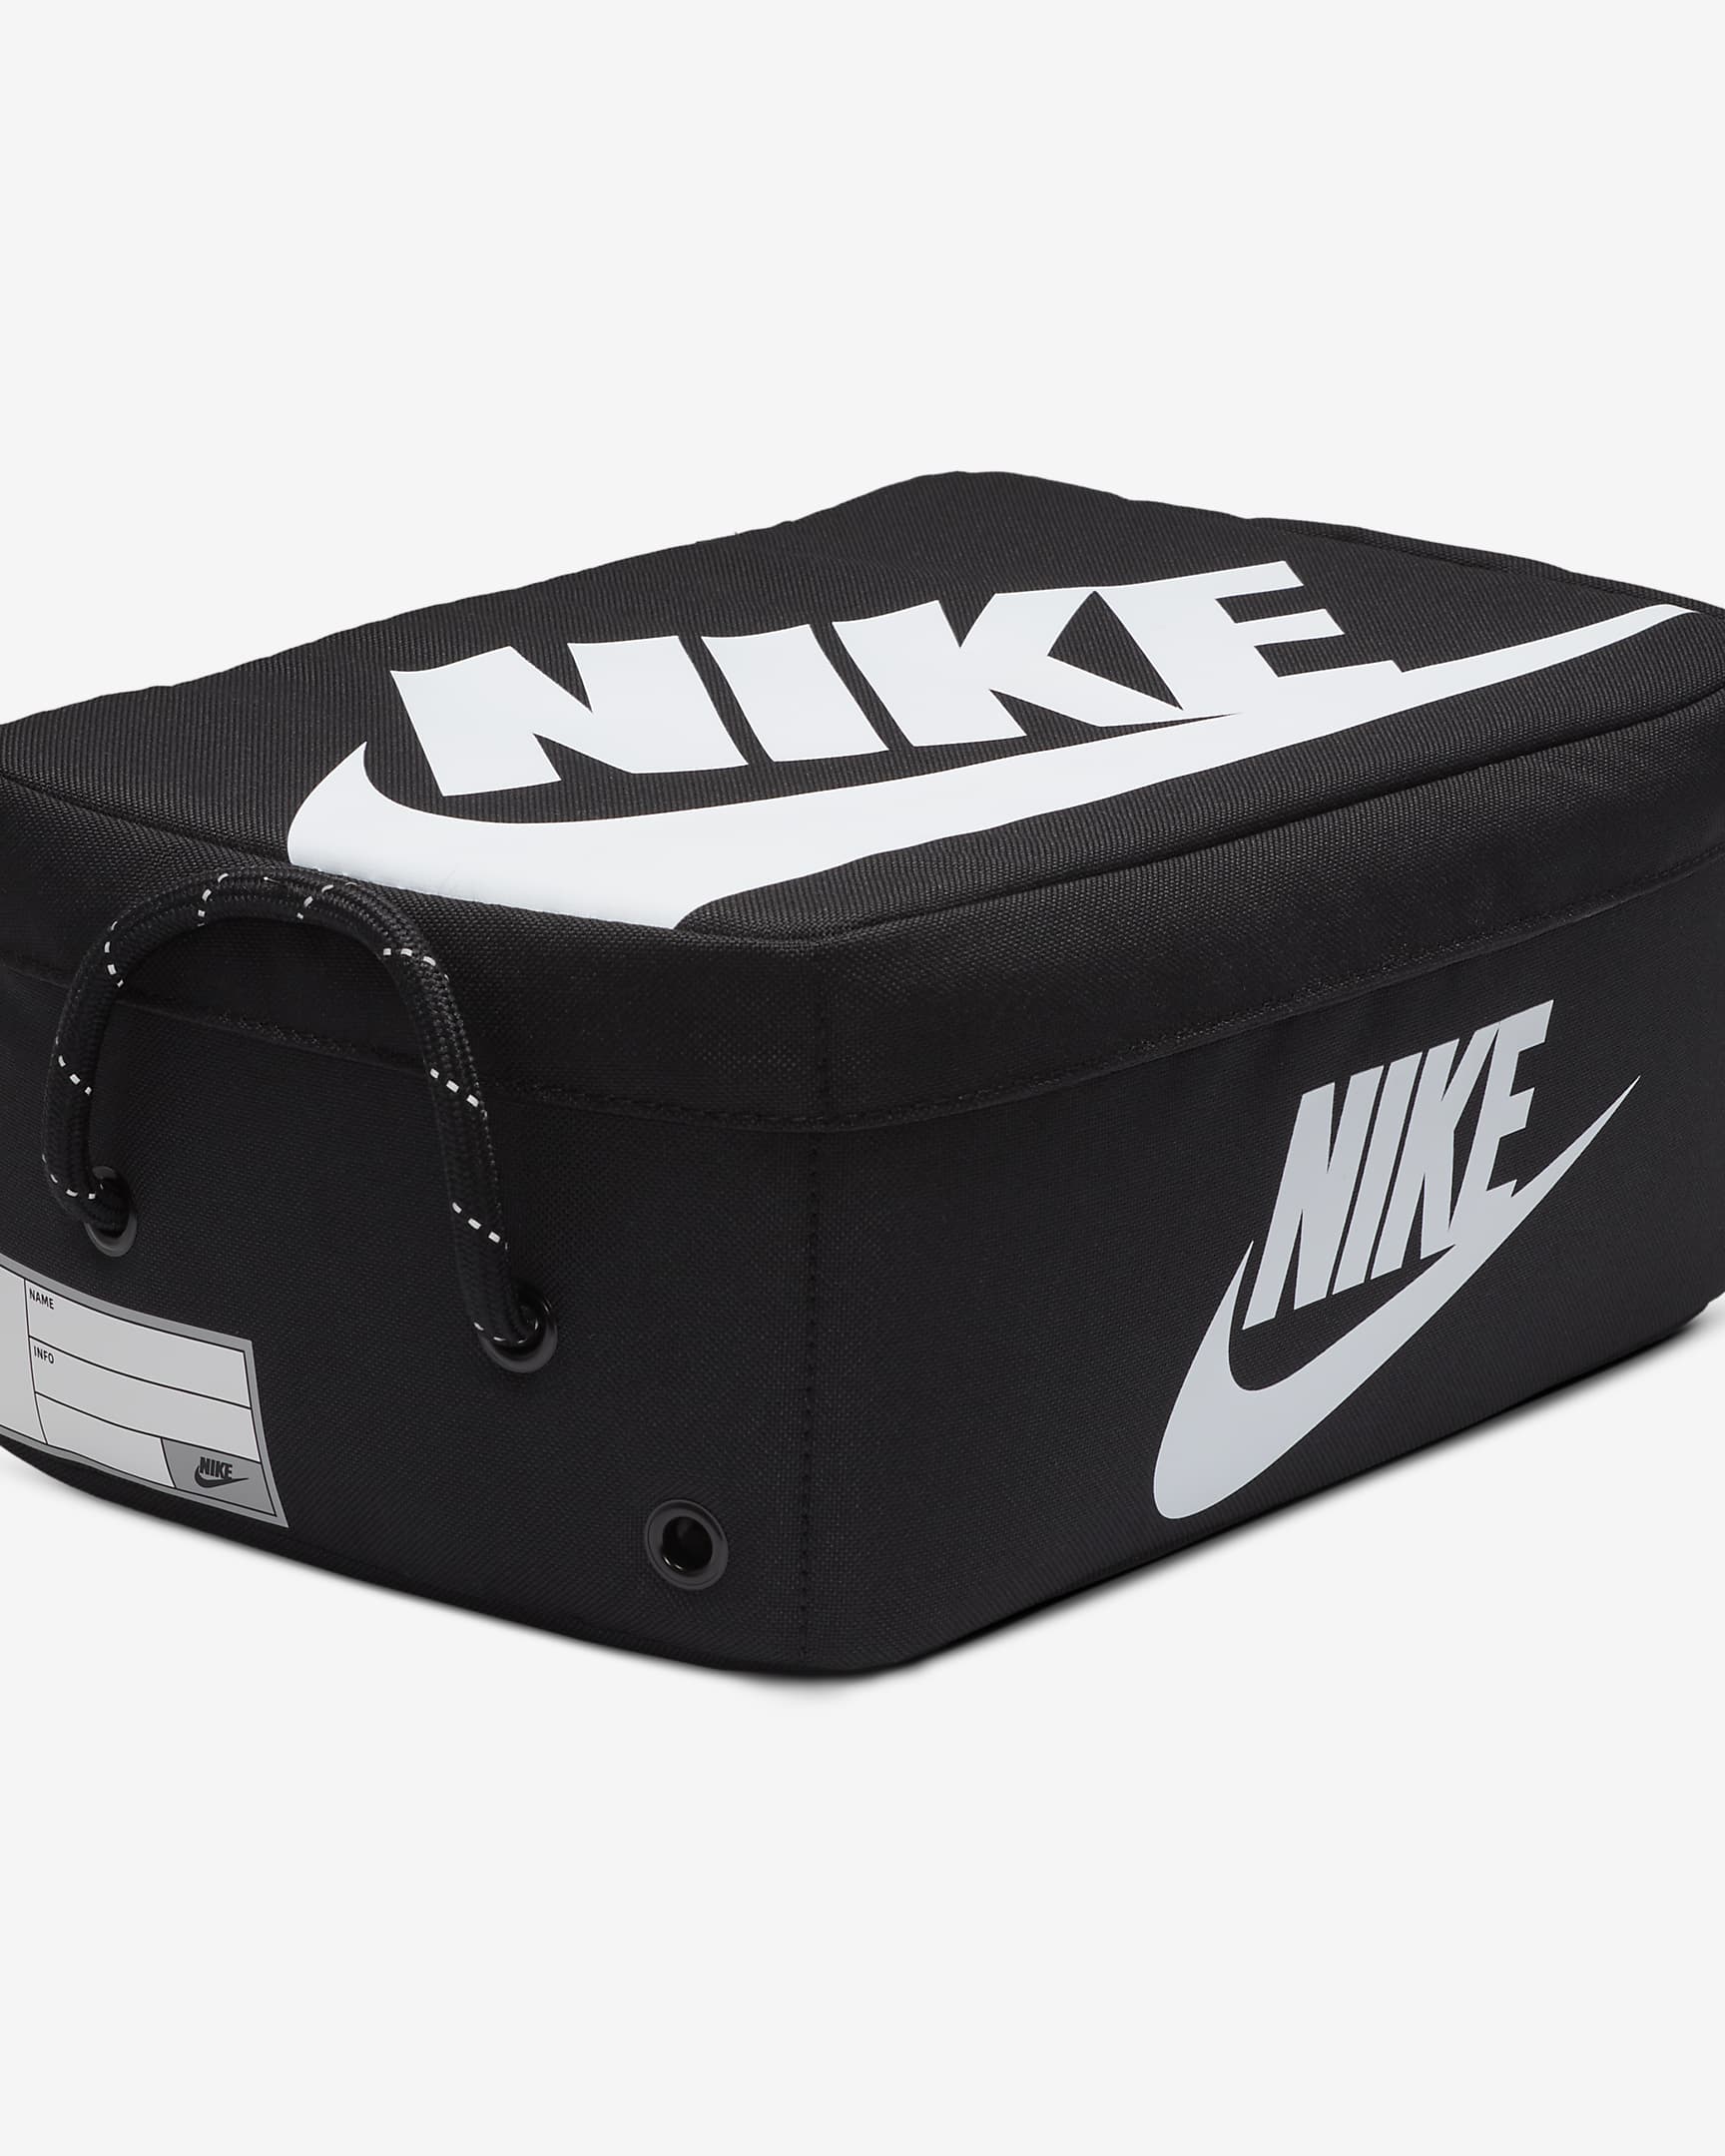 Nike Shoe Box Bag (Small, 8L). Nike BE